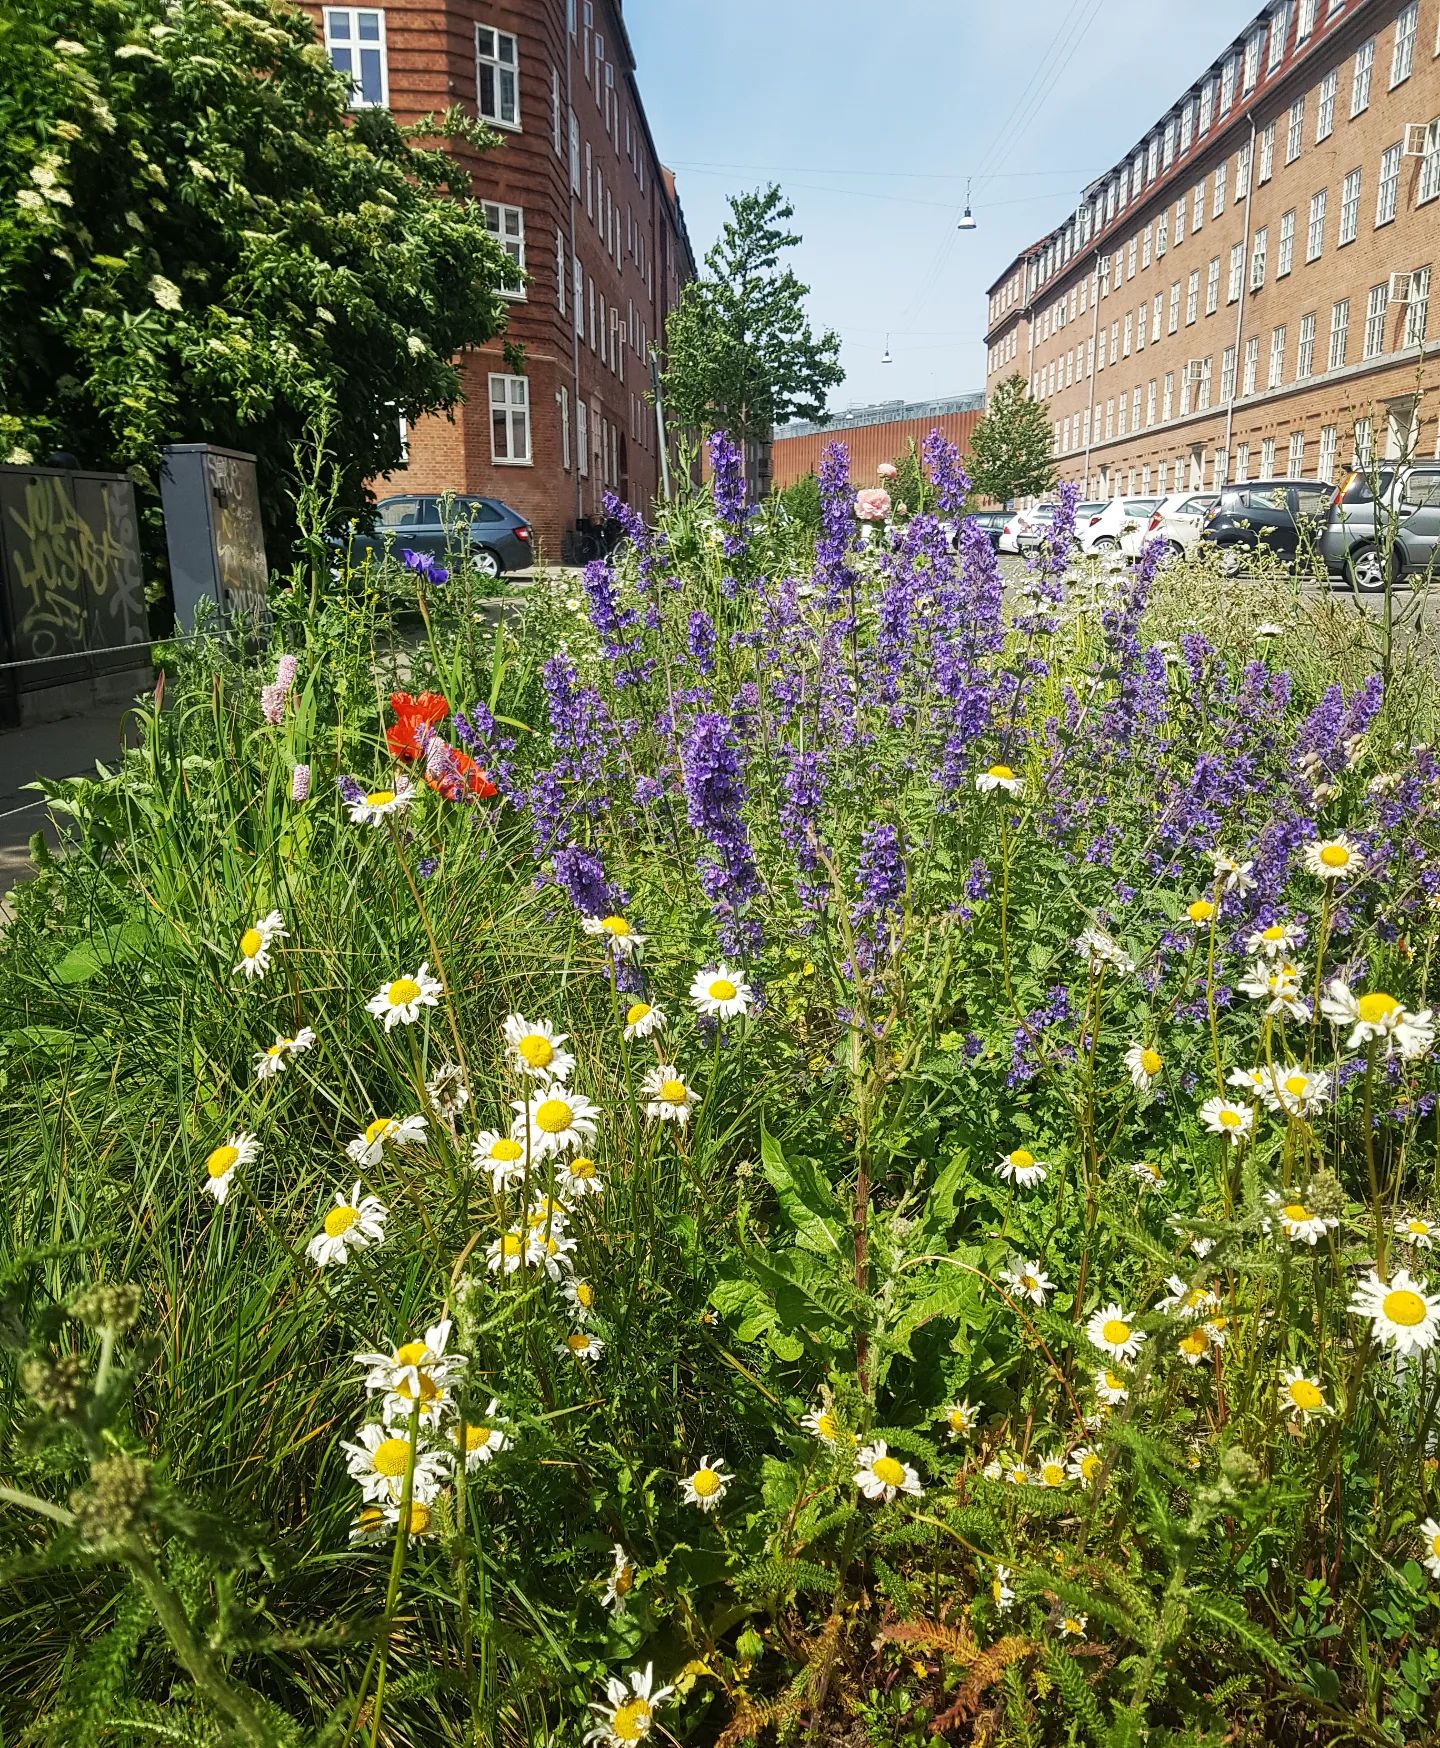 Nu kan du igen søge puljen til biodiversitet! 🌿🌳🍃🦔🪵🌼🐝🐞🦋🌱 

Drømmer du om mere og bedre natur på Østerbro og i Nordhavn? Måske har du og dine naboer en god ide til et grønt projekt i jeres gård eller lokalområde? 😀💡 Så se her! Københavns Kommune har en pulje, hvor du som borger eller (bolig)forening kan søge penge til lokale projekter, der skaber mere og bedre biodiversitet i byen 💚 Det kan f.eks. være facadebeplantning, grønne tage, plantekasser, gadebede, fuglekasser eller kvasbunker. Næste ansøgningsfrist er d. 1. september 2022. 

Læs mere om retningslinjer for puljen og hvordan du søger på 👉 www.kk.dk/biodiversitet 

#biodiversitet #biodiversitetspulje #bynatur #naturibyen #hjælpinsekterne #hjælpbierne #redbierne #grønby #grøntøsterbro #grøntnordhavn #grøntkøbenhavn #vildesteby #vildestekommune #danmarksvildestekommune #miljøpunkt #miljøpunktøsterbro #østerbro #nordhavn #københavn #copenhagen